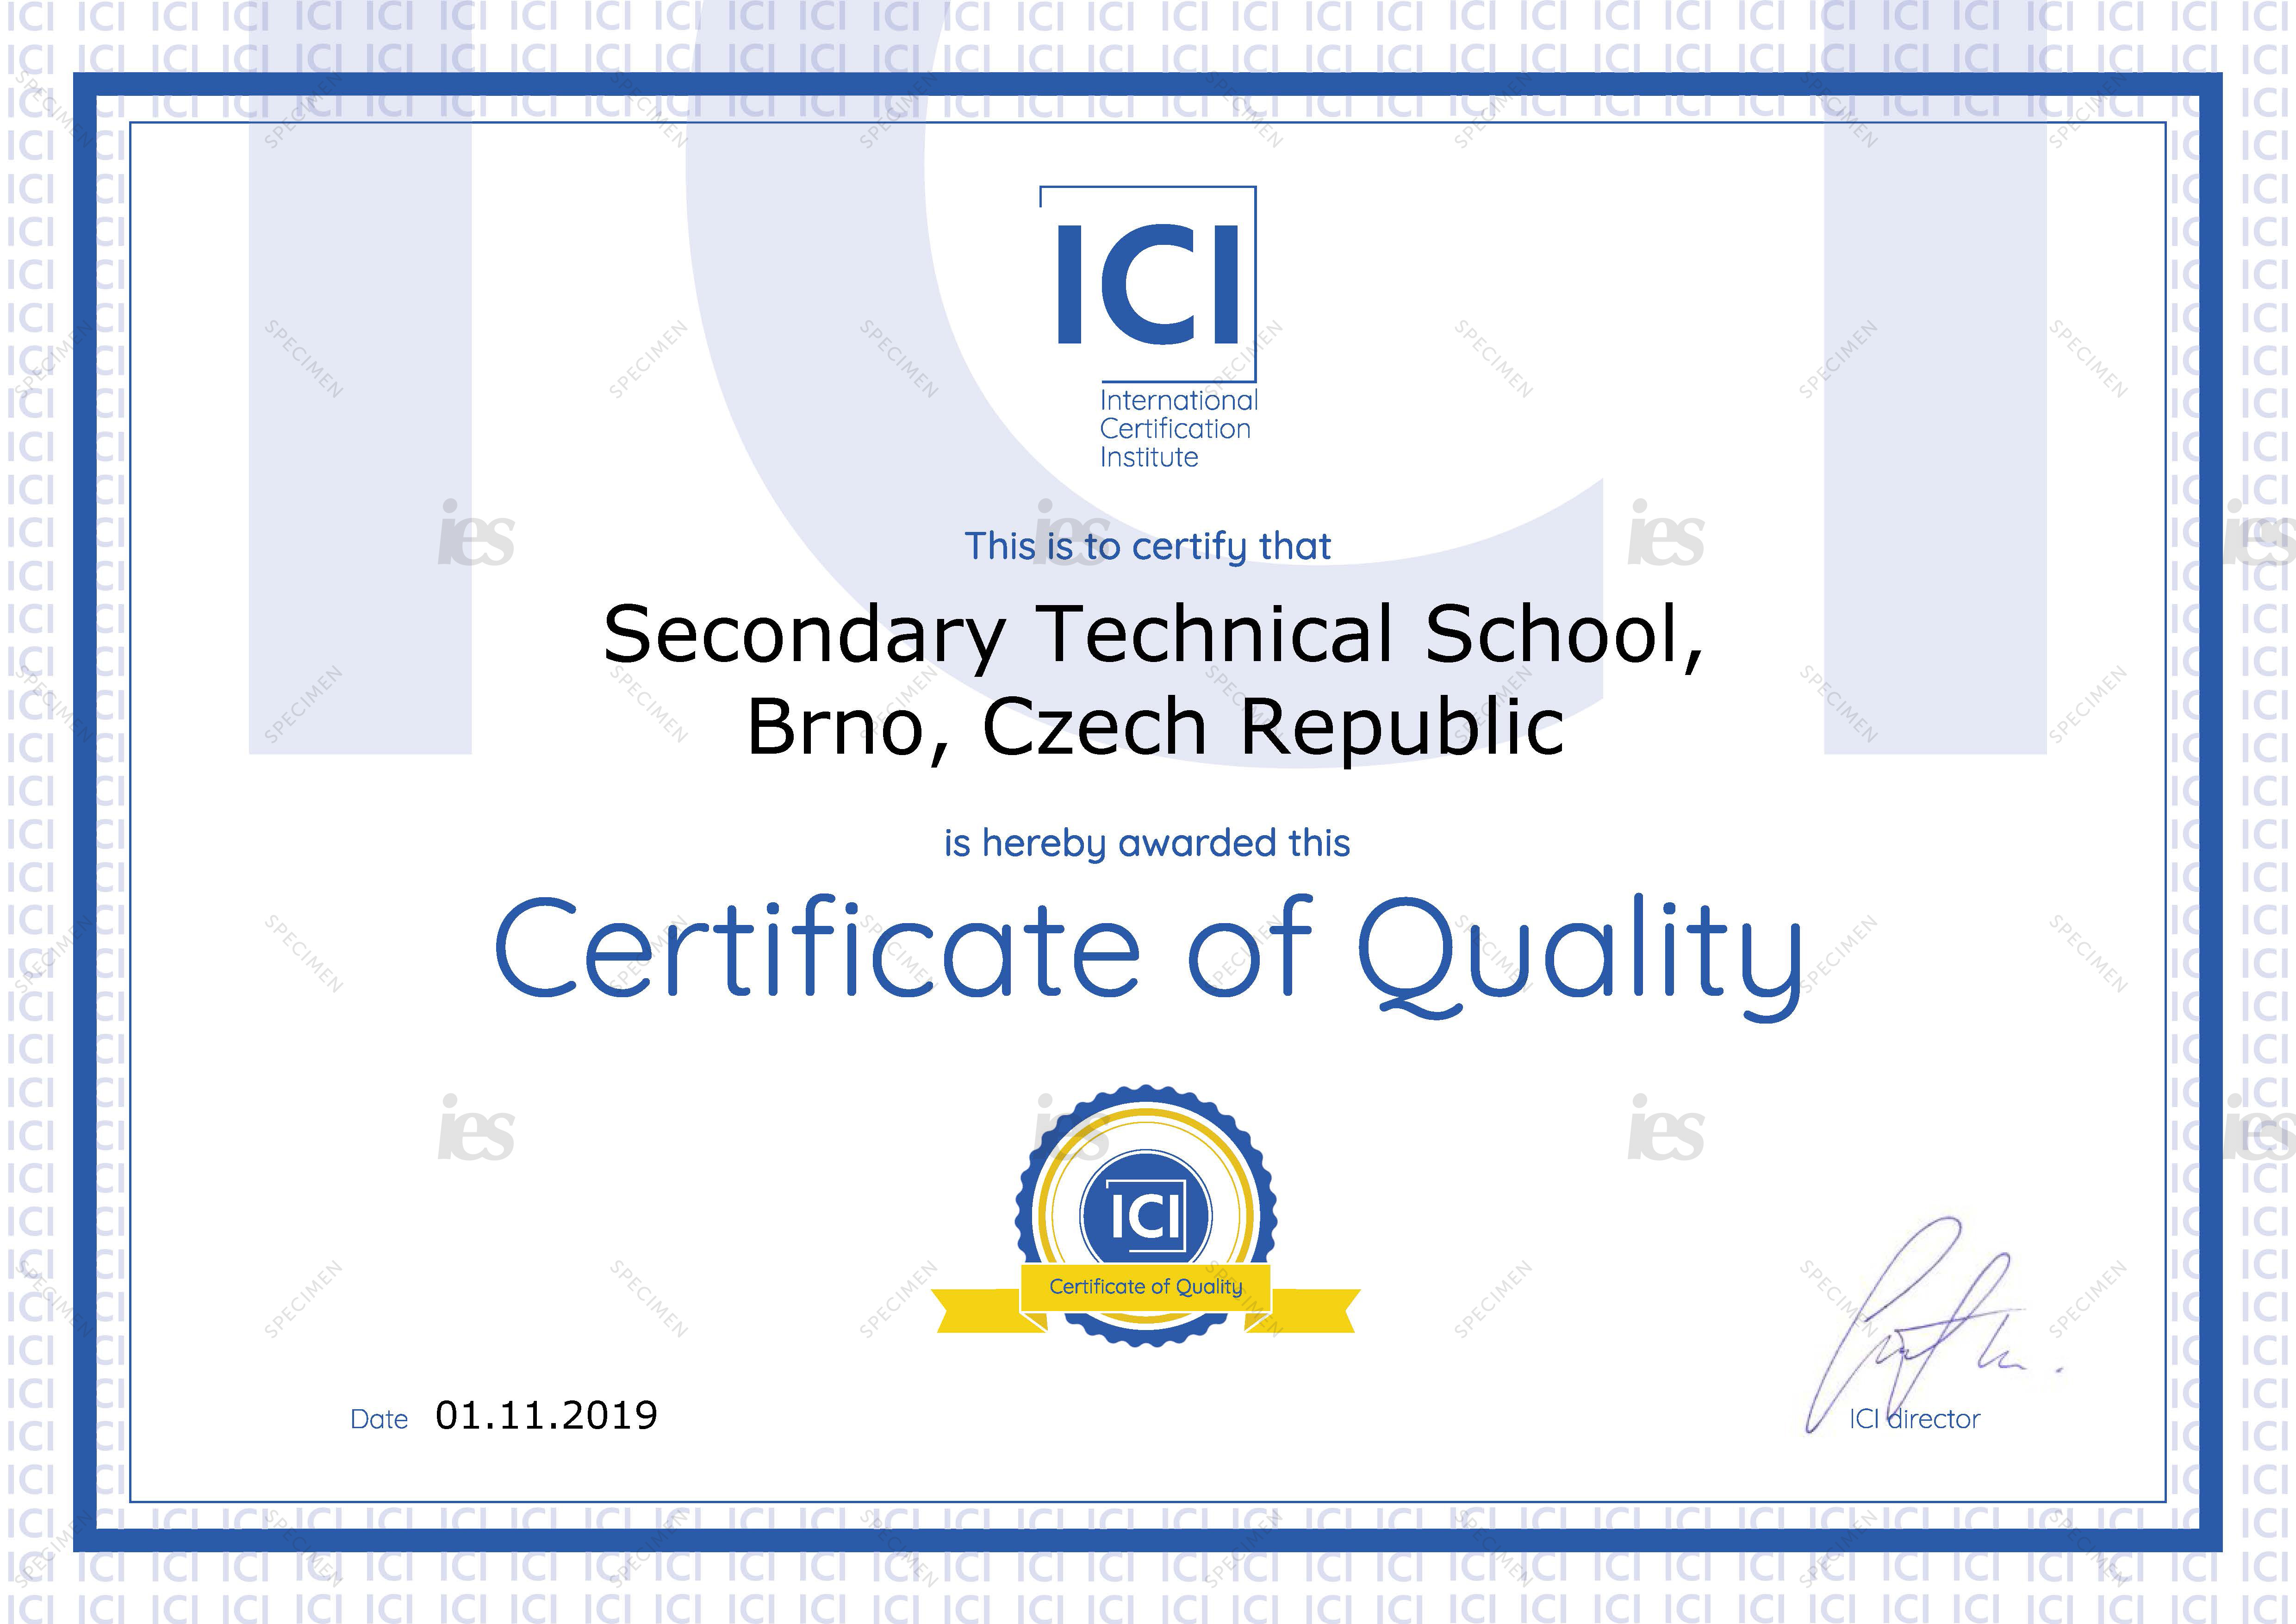 Certyfikat instytucji ICI